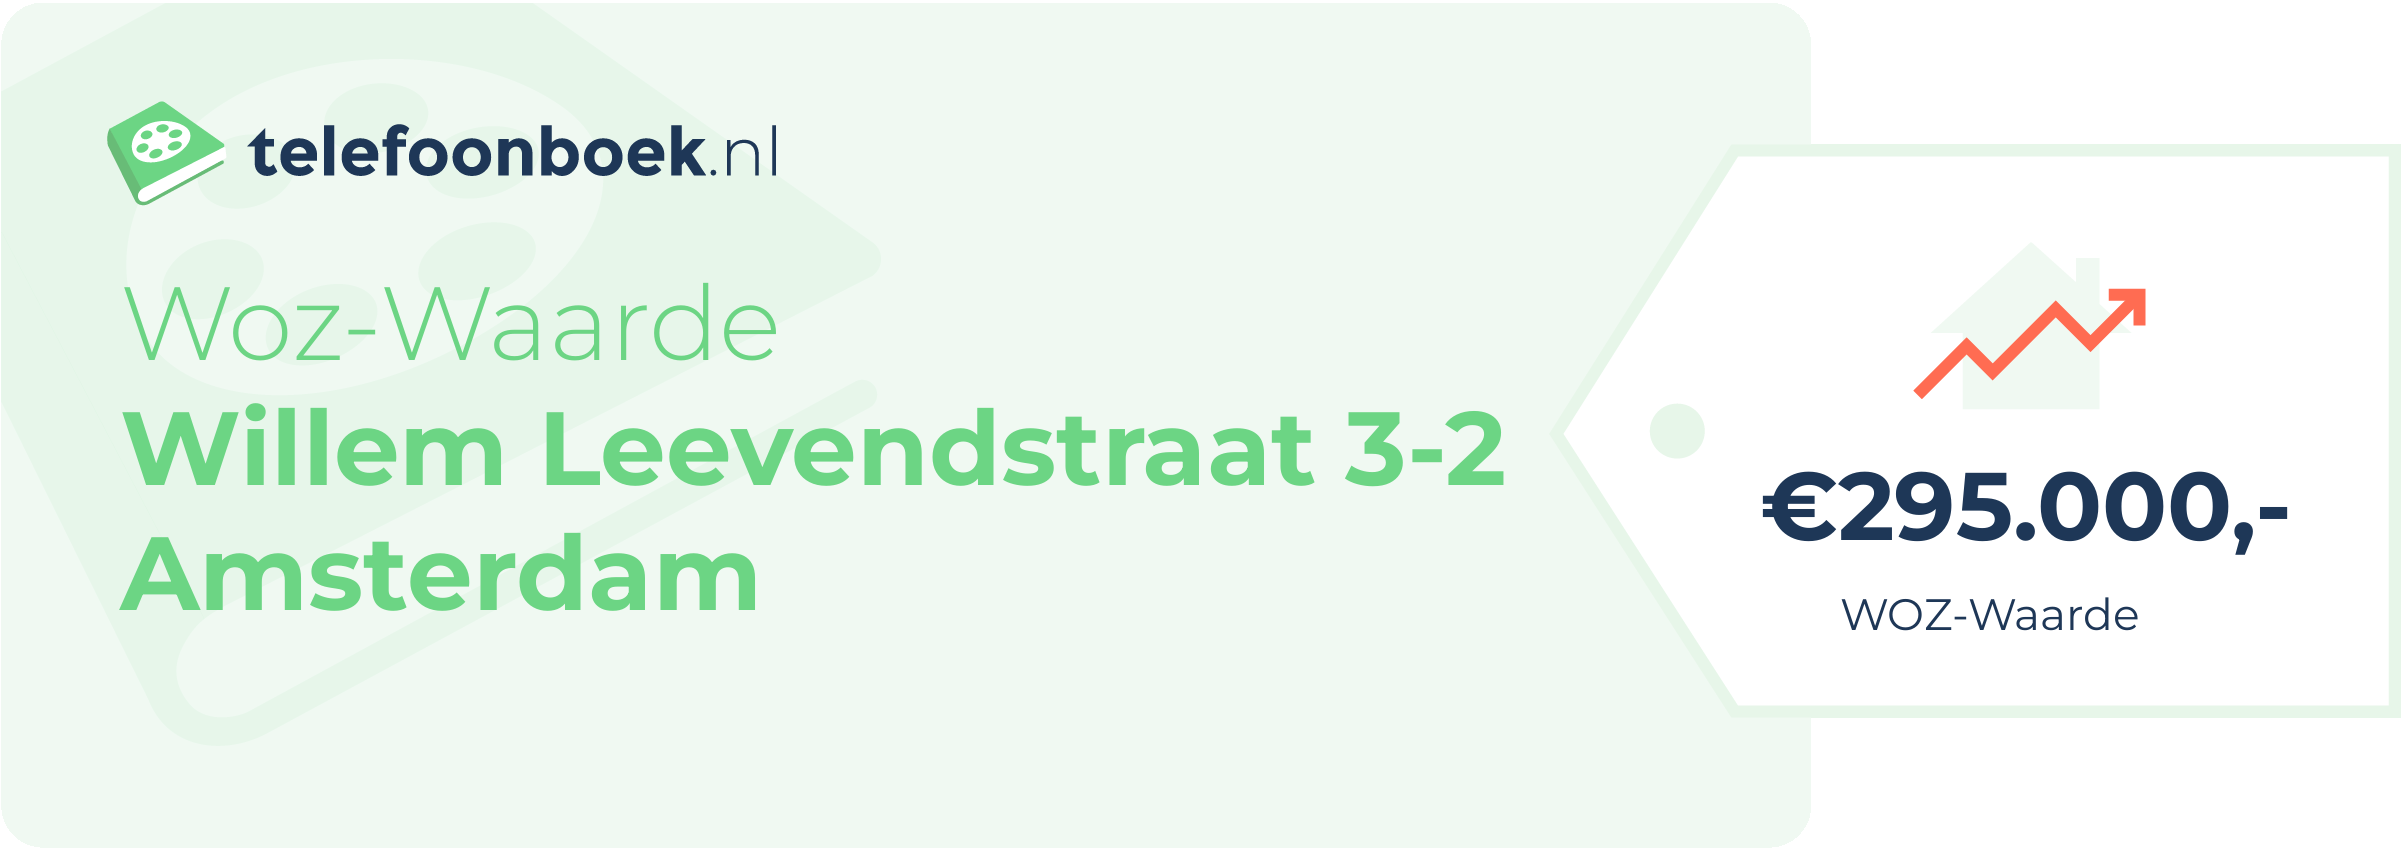 WOZ-waarde Willem Leevendstraat 3-2 Amsterdam